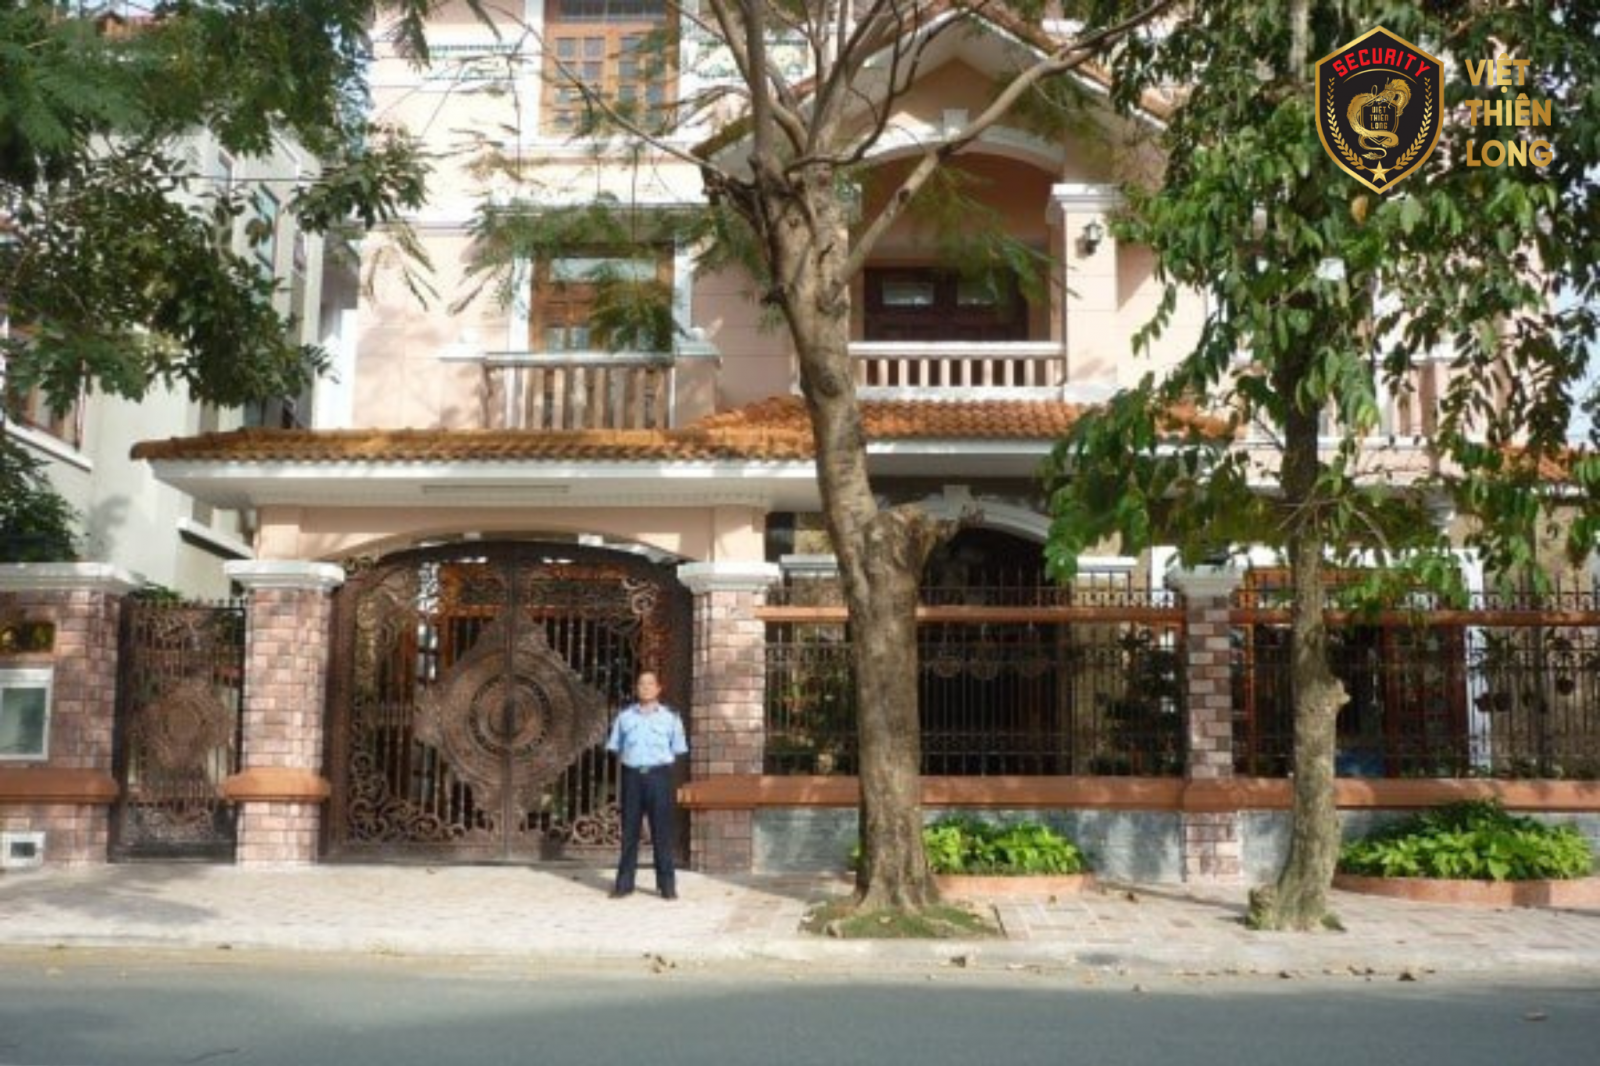 Việt Thiên Long - Dịch vụ bảo vệ nhà riêng, biệt thự uy tín nhất